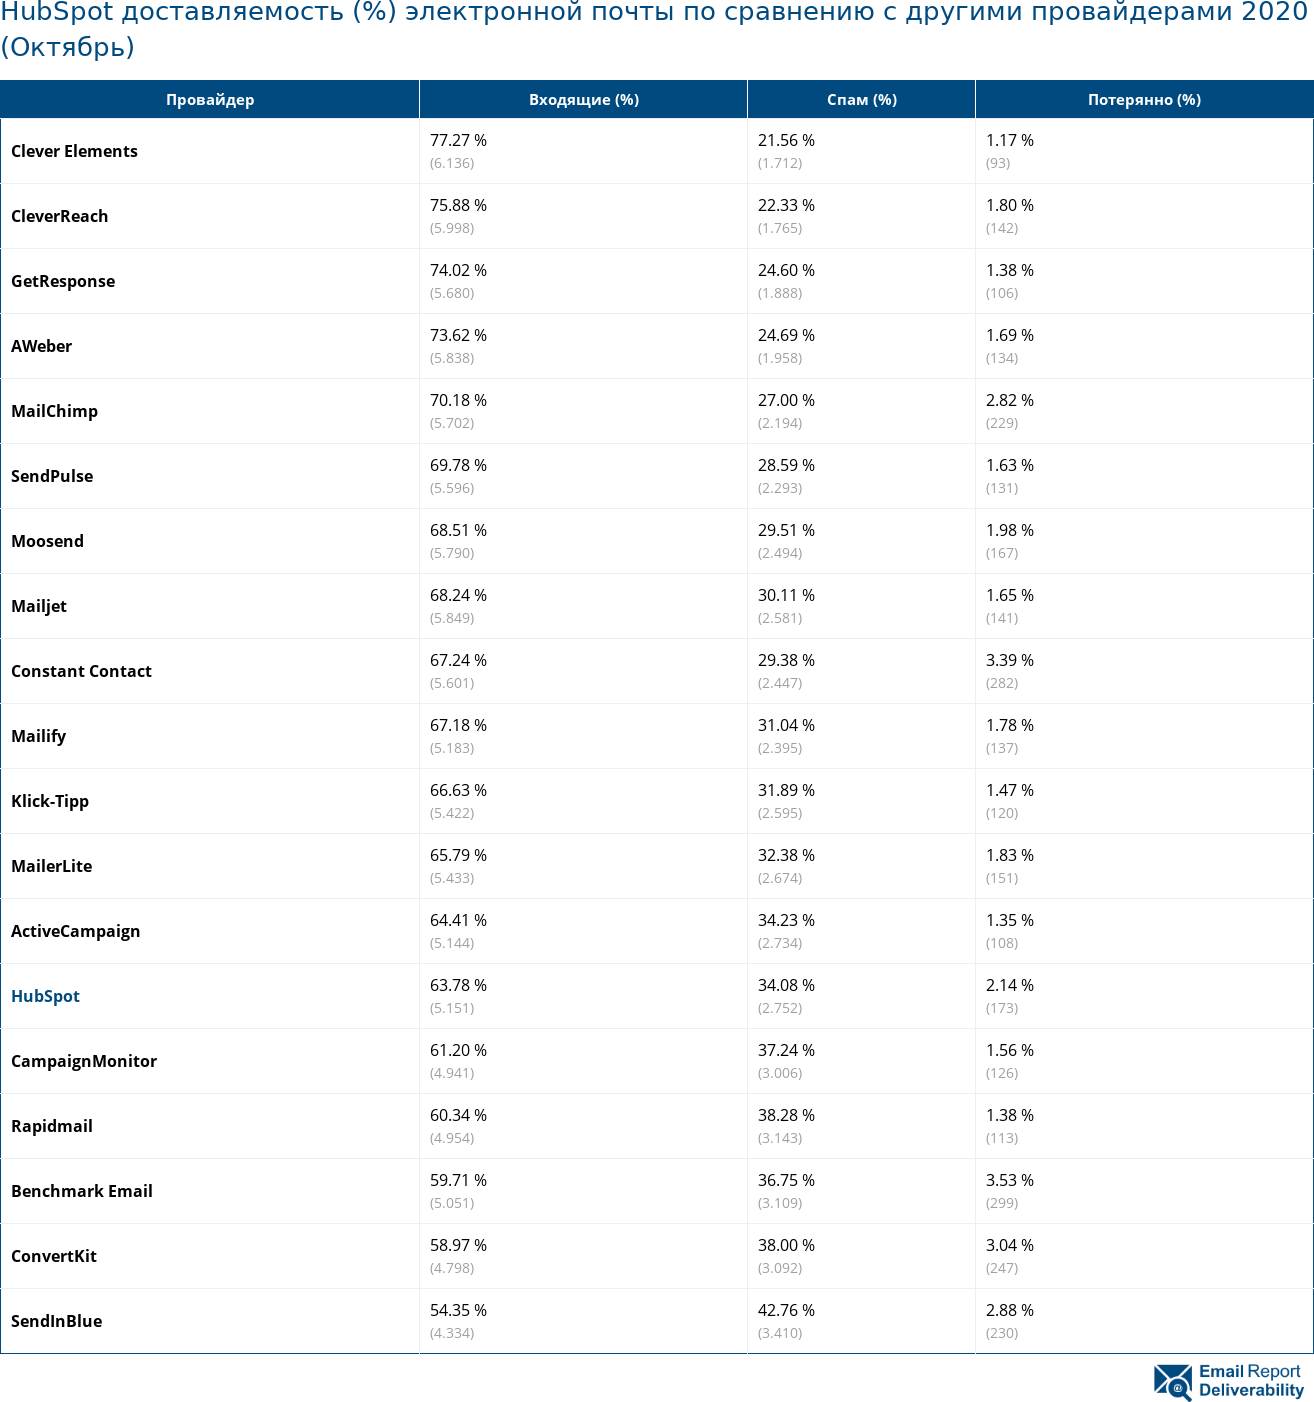 HubSpot доставляемость (%) электронной почты по сравнению с другими провайдерами 2020 (Октябрь)